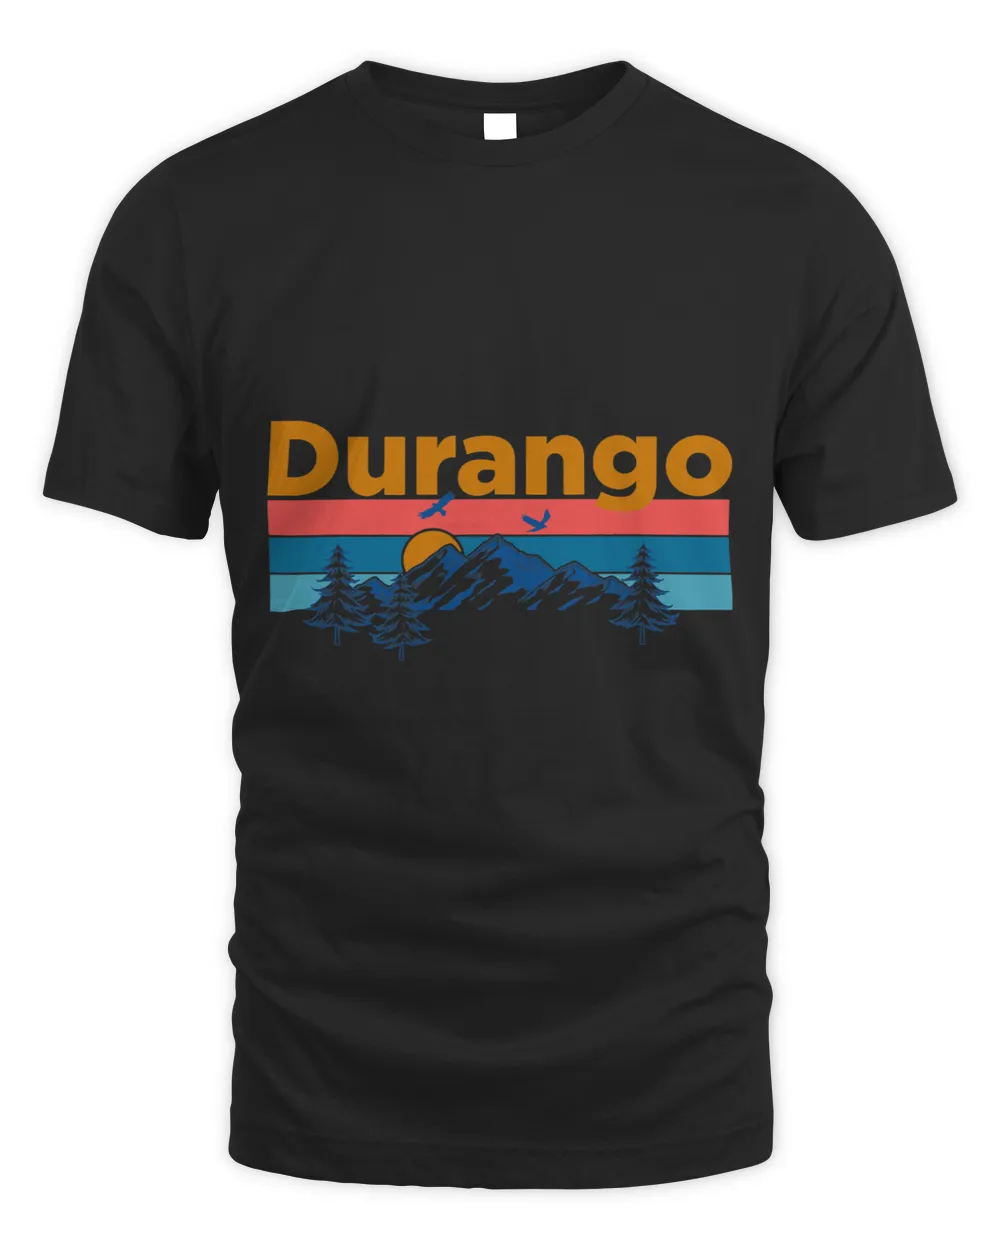 Durango Colorado Mountain Sun and Trees Design